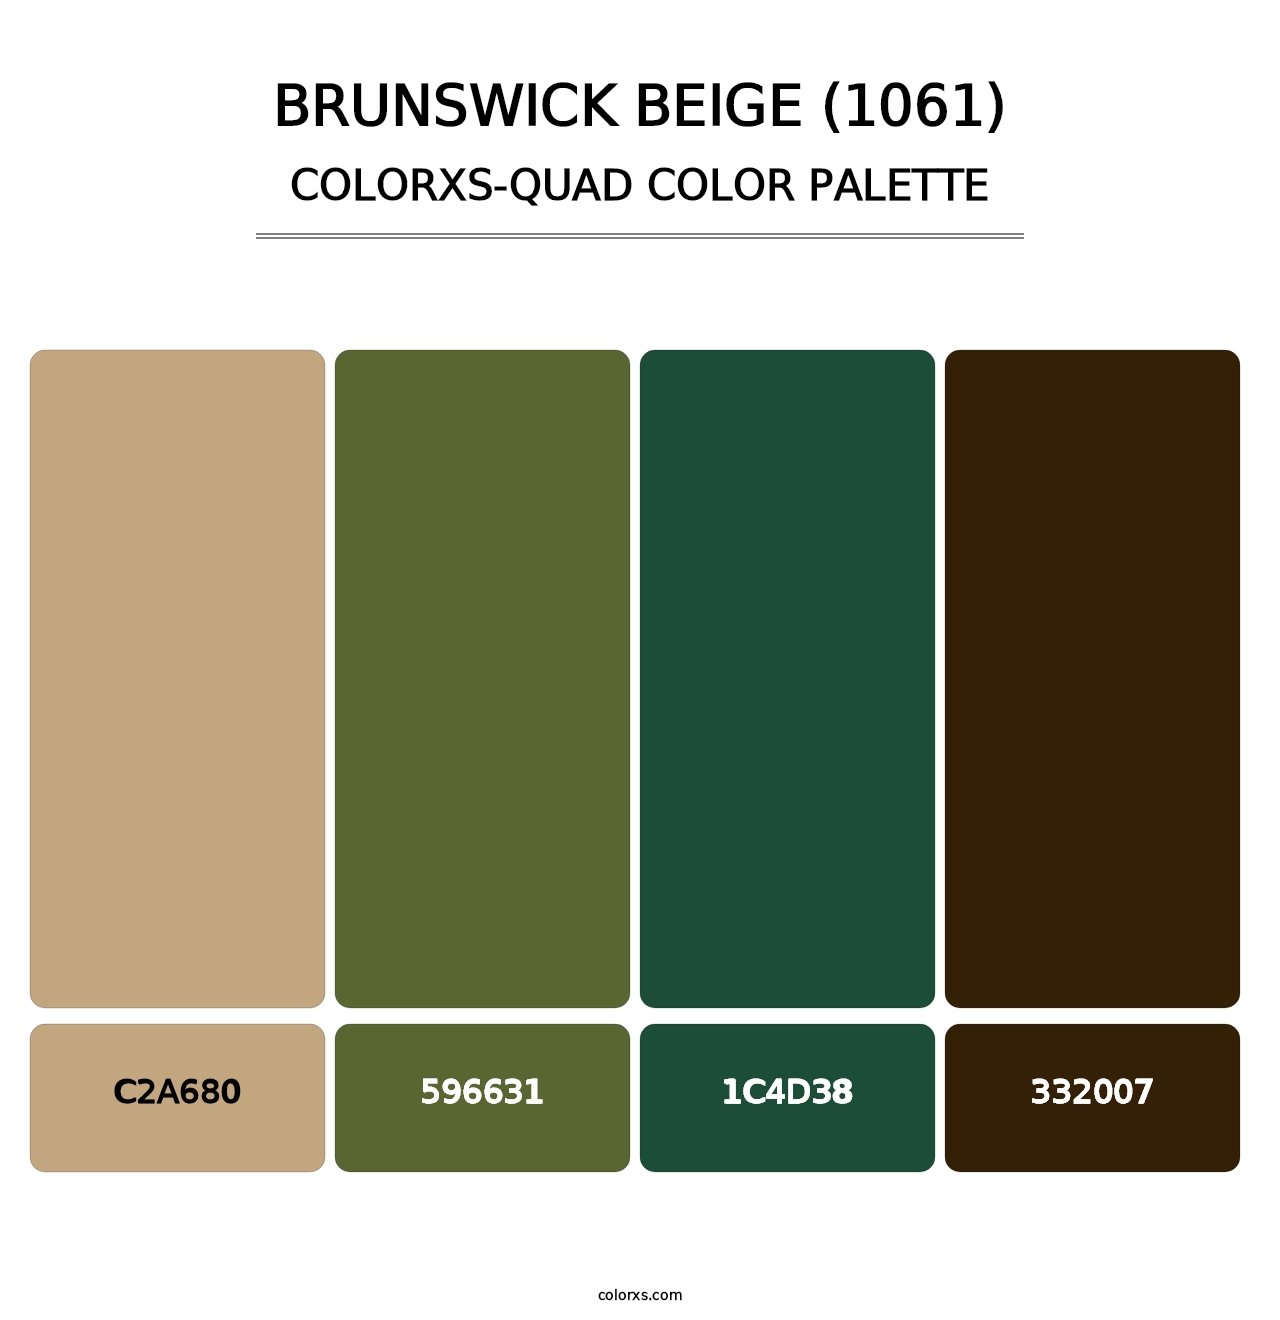 Brunswick Beige (1061) - Colorxs Quad Palette